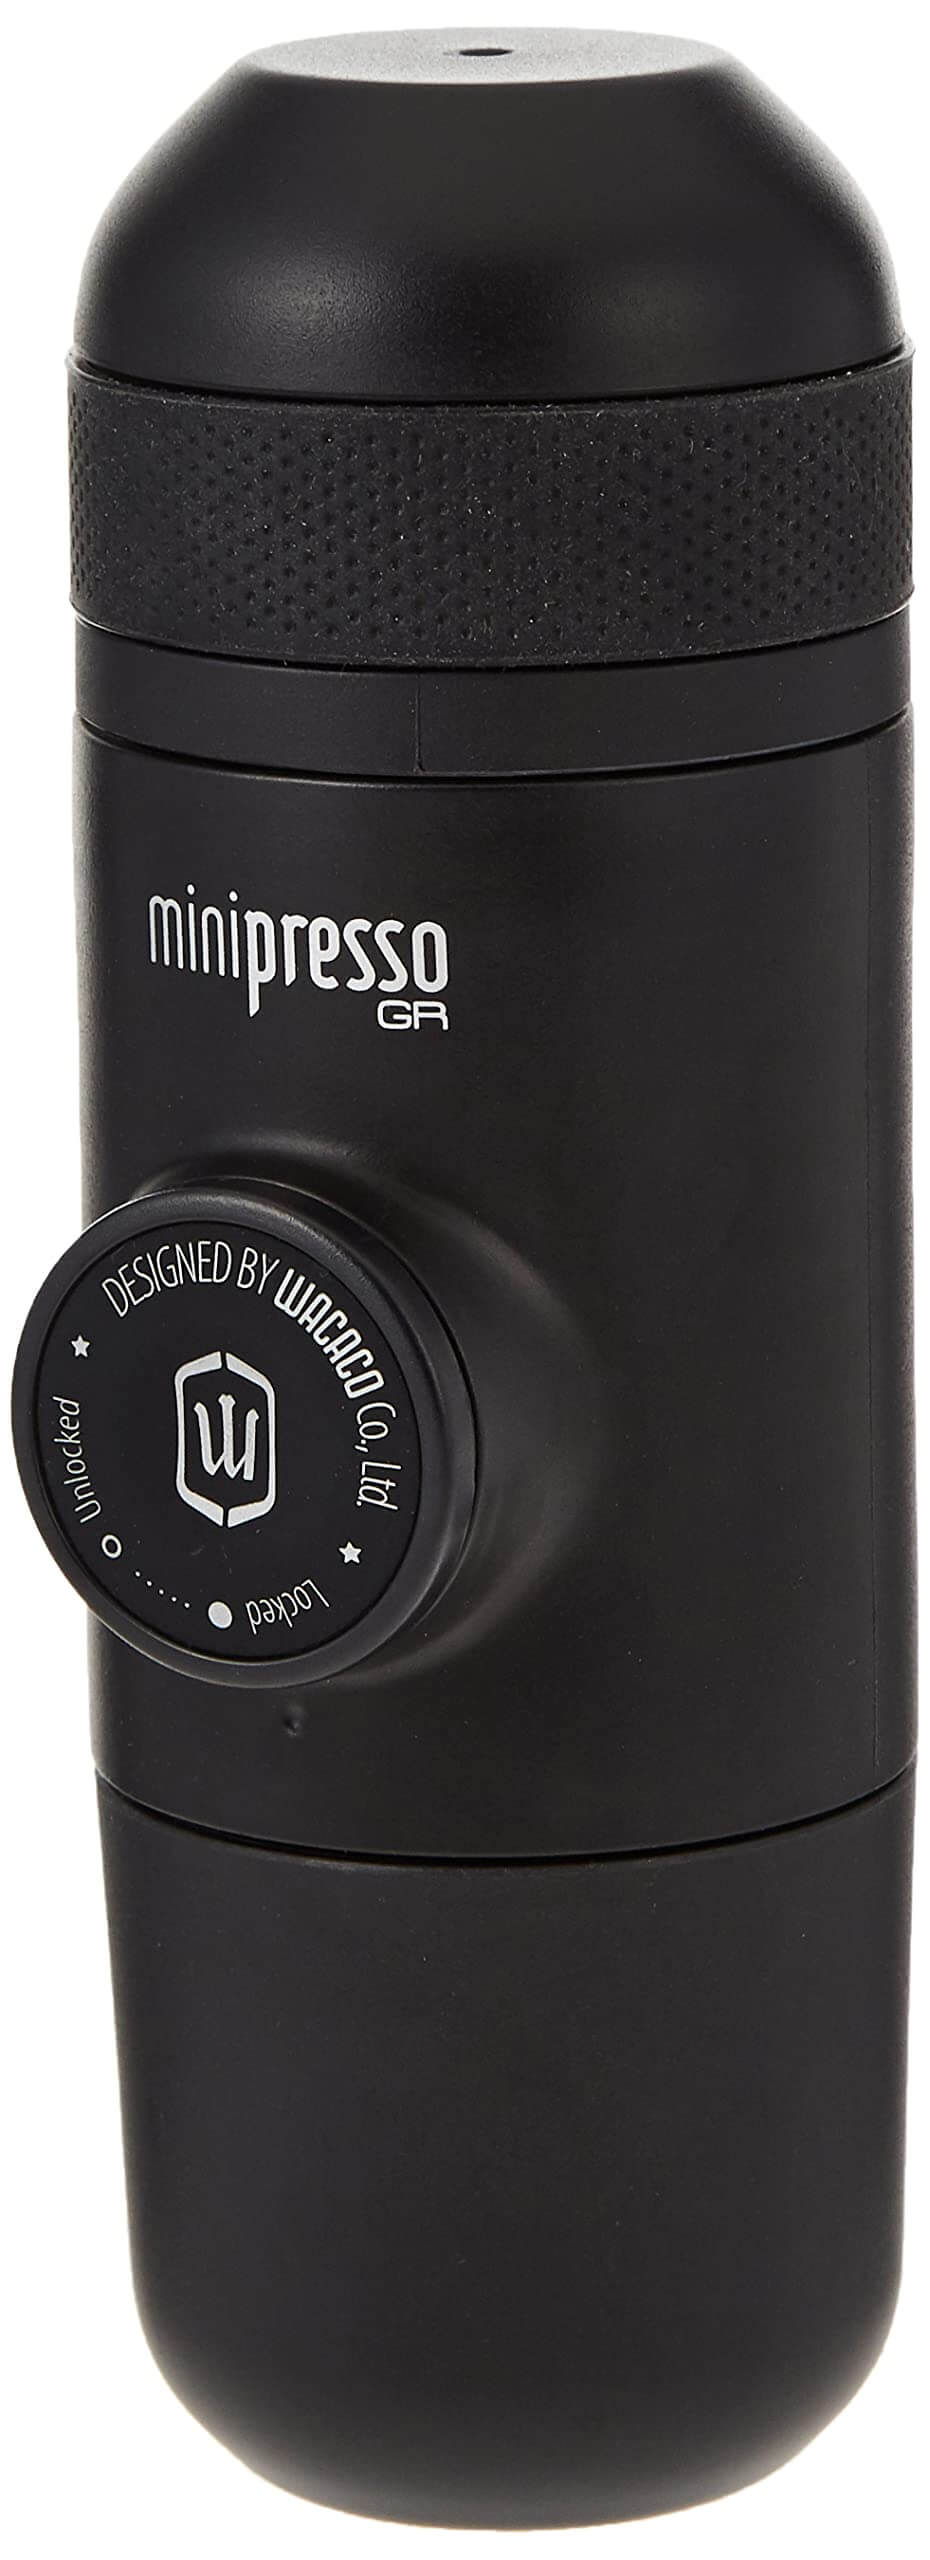 Wacaco Minipresso GR tragbare Espressomaschine